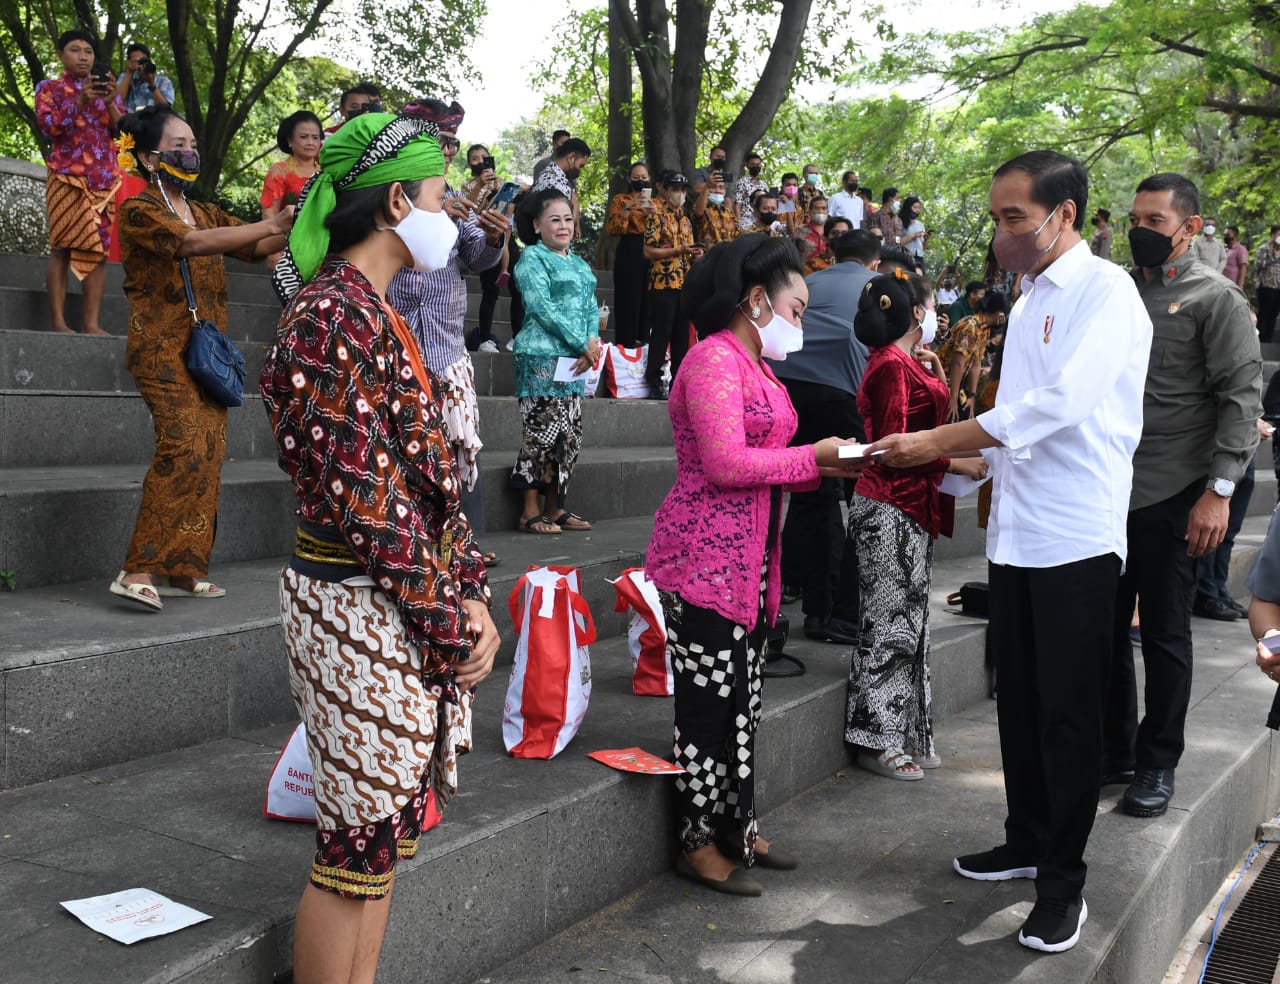 Ditanya Kinerja Gibran, Jokowi: Waduh, Saya Gak Mengikuti, Tugas dan Pekerjaan Banyak Sekali